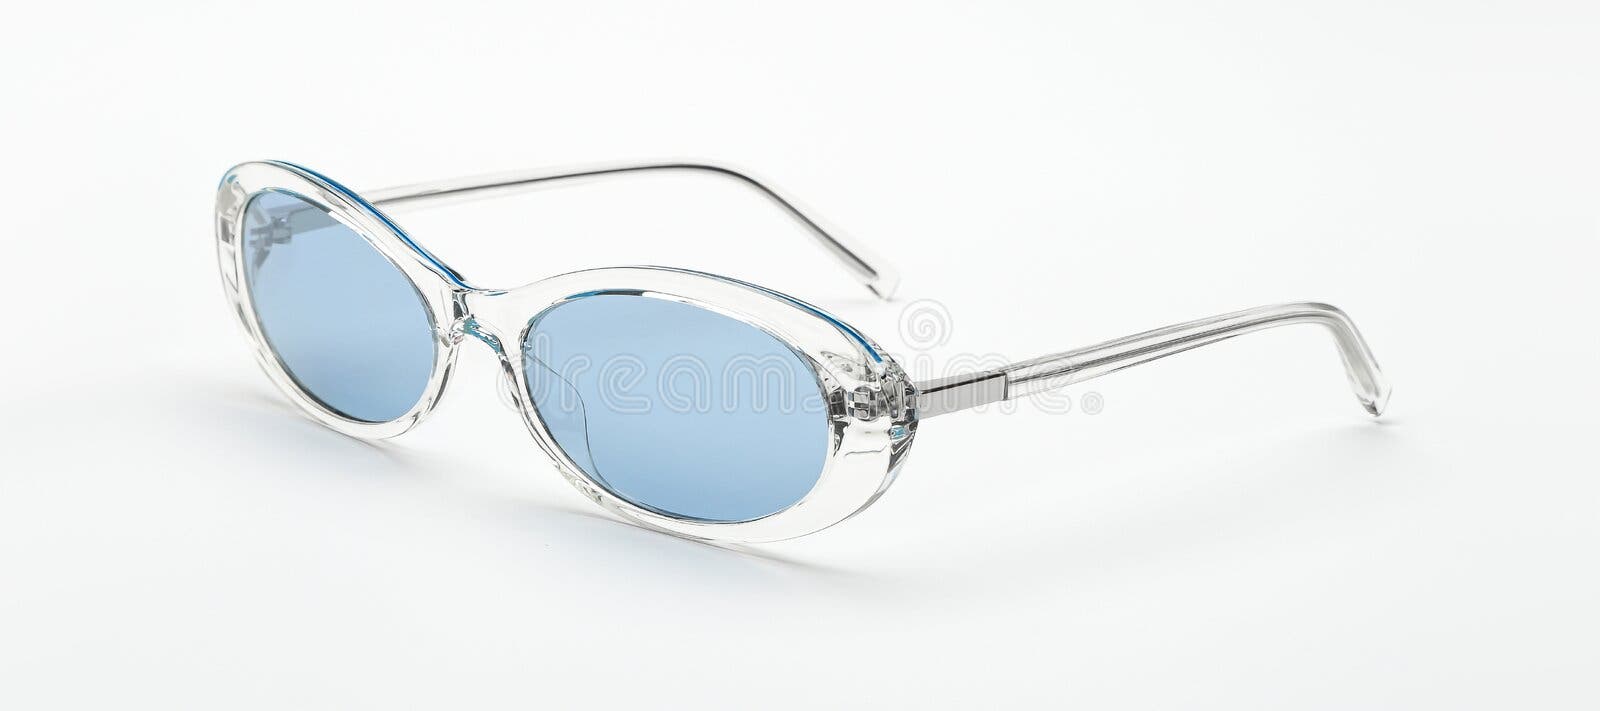 De Sol Retro Aisladas En Fondo Blanco. Gafas De Sol Vintage Mujer Accesorios De Verano Color Blanco Y Azul de - Imagen de accesorio, cristales: 191225793